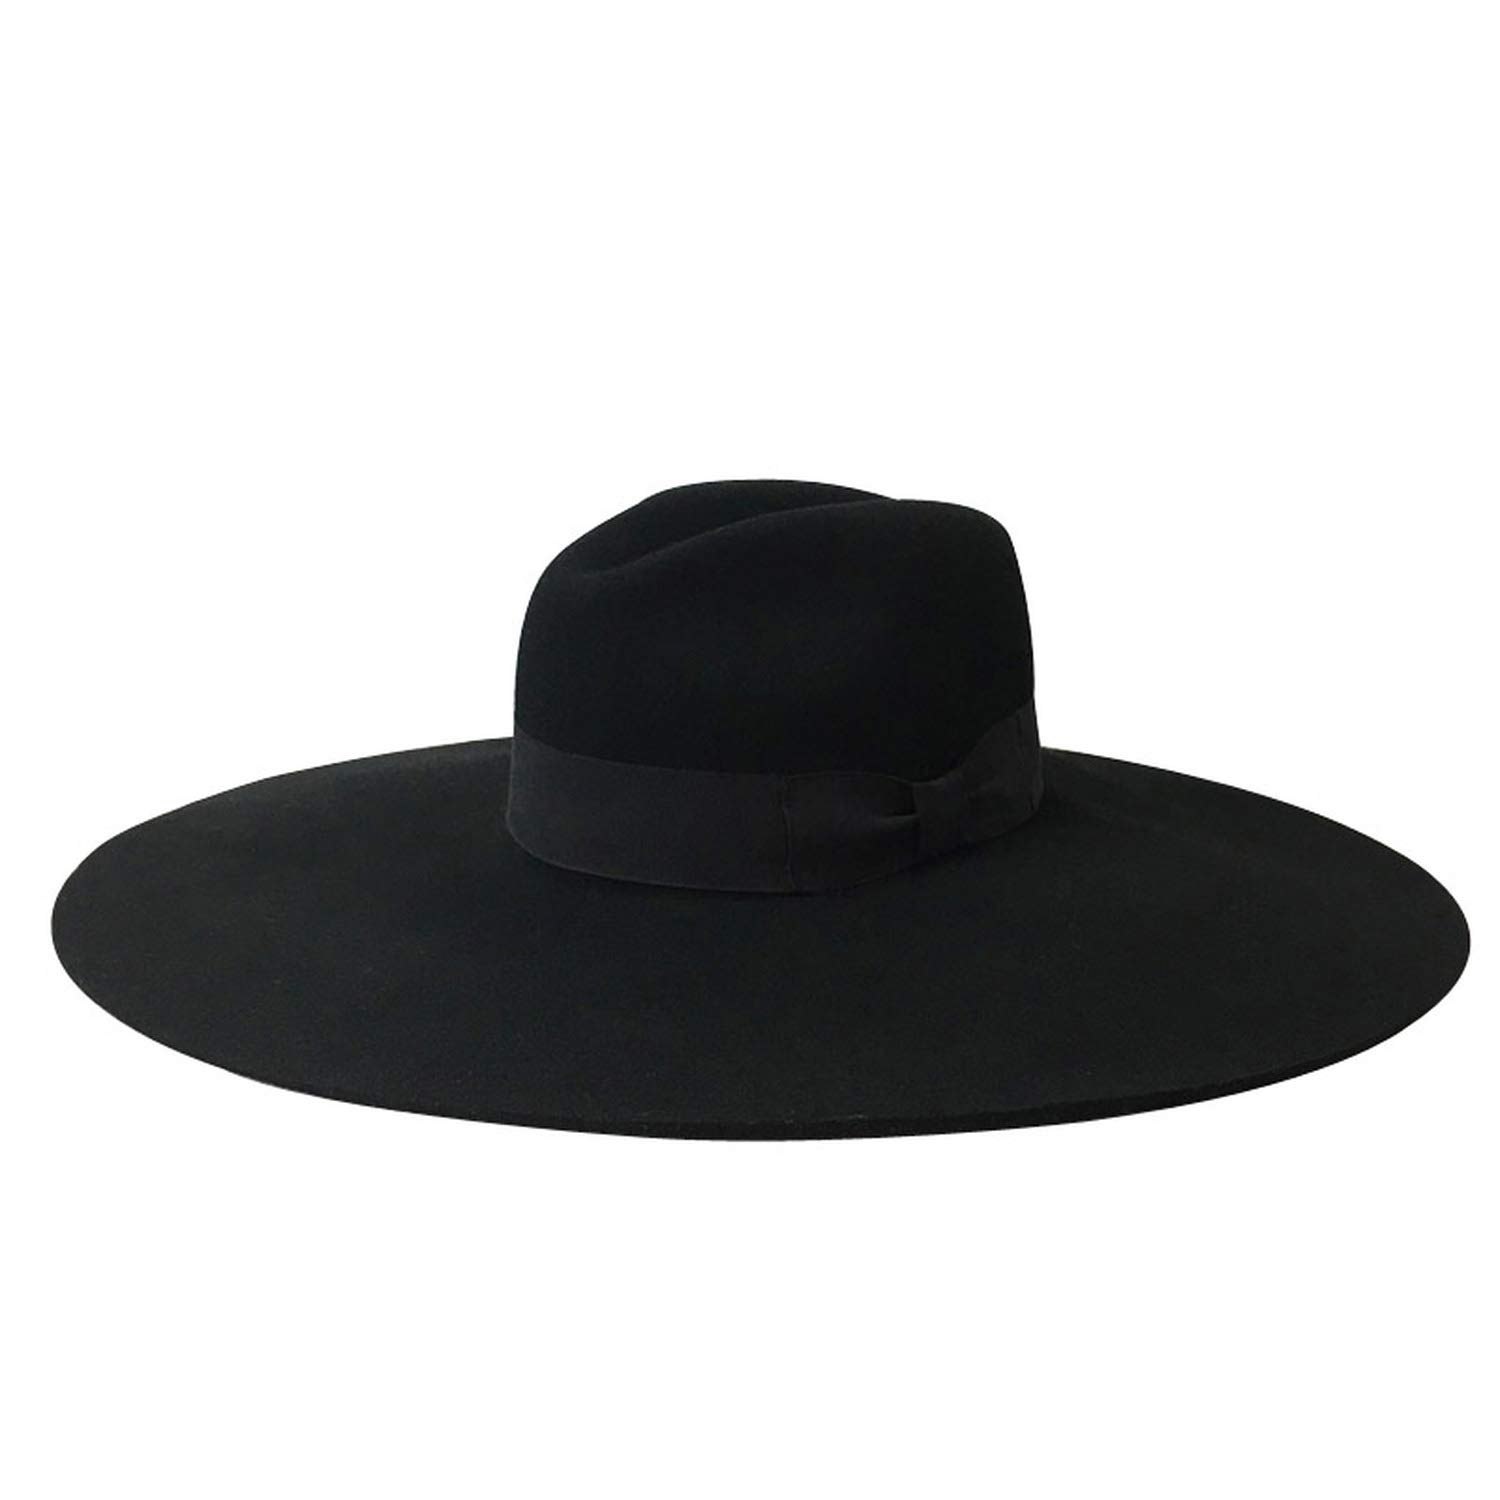 Жесткая шляпа. Шляпа Федора мужская широкополая. Fedora шляпа мужская широкополая. Шляпа мужская Fedora Black. Фетровая шляпа Федора.